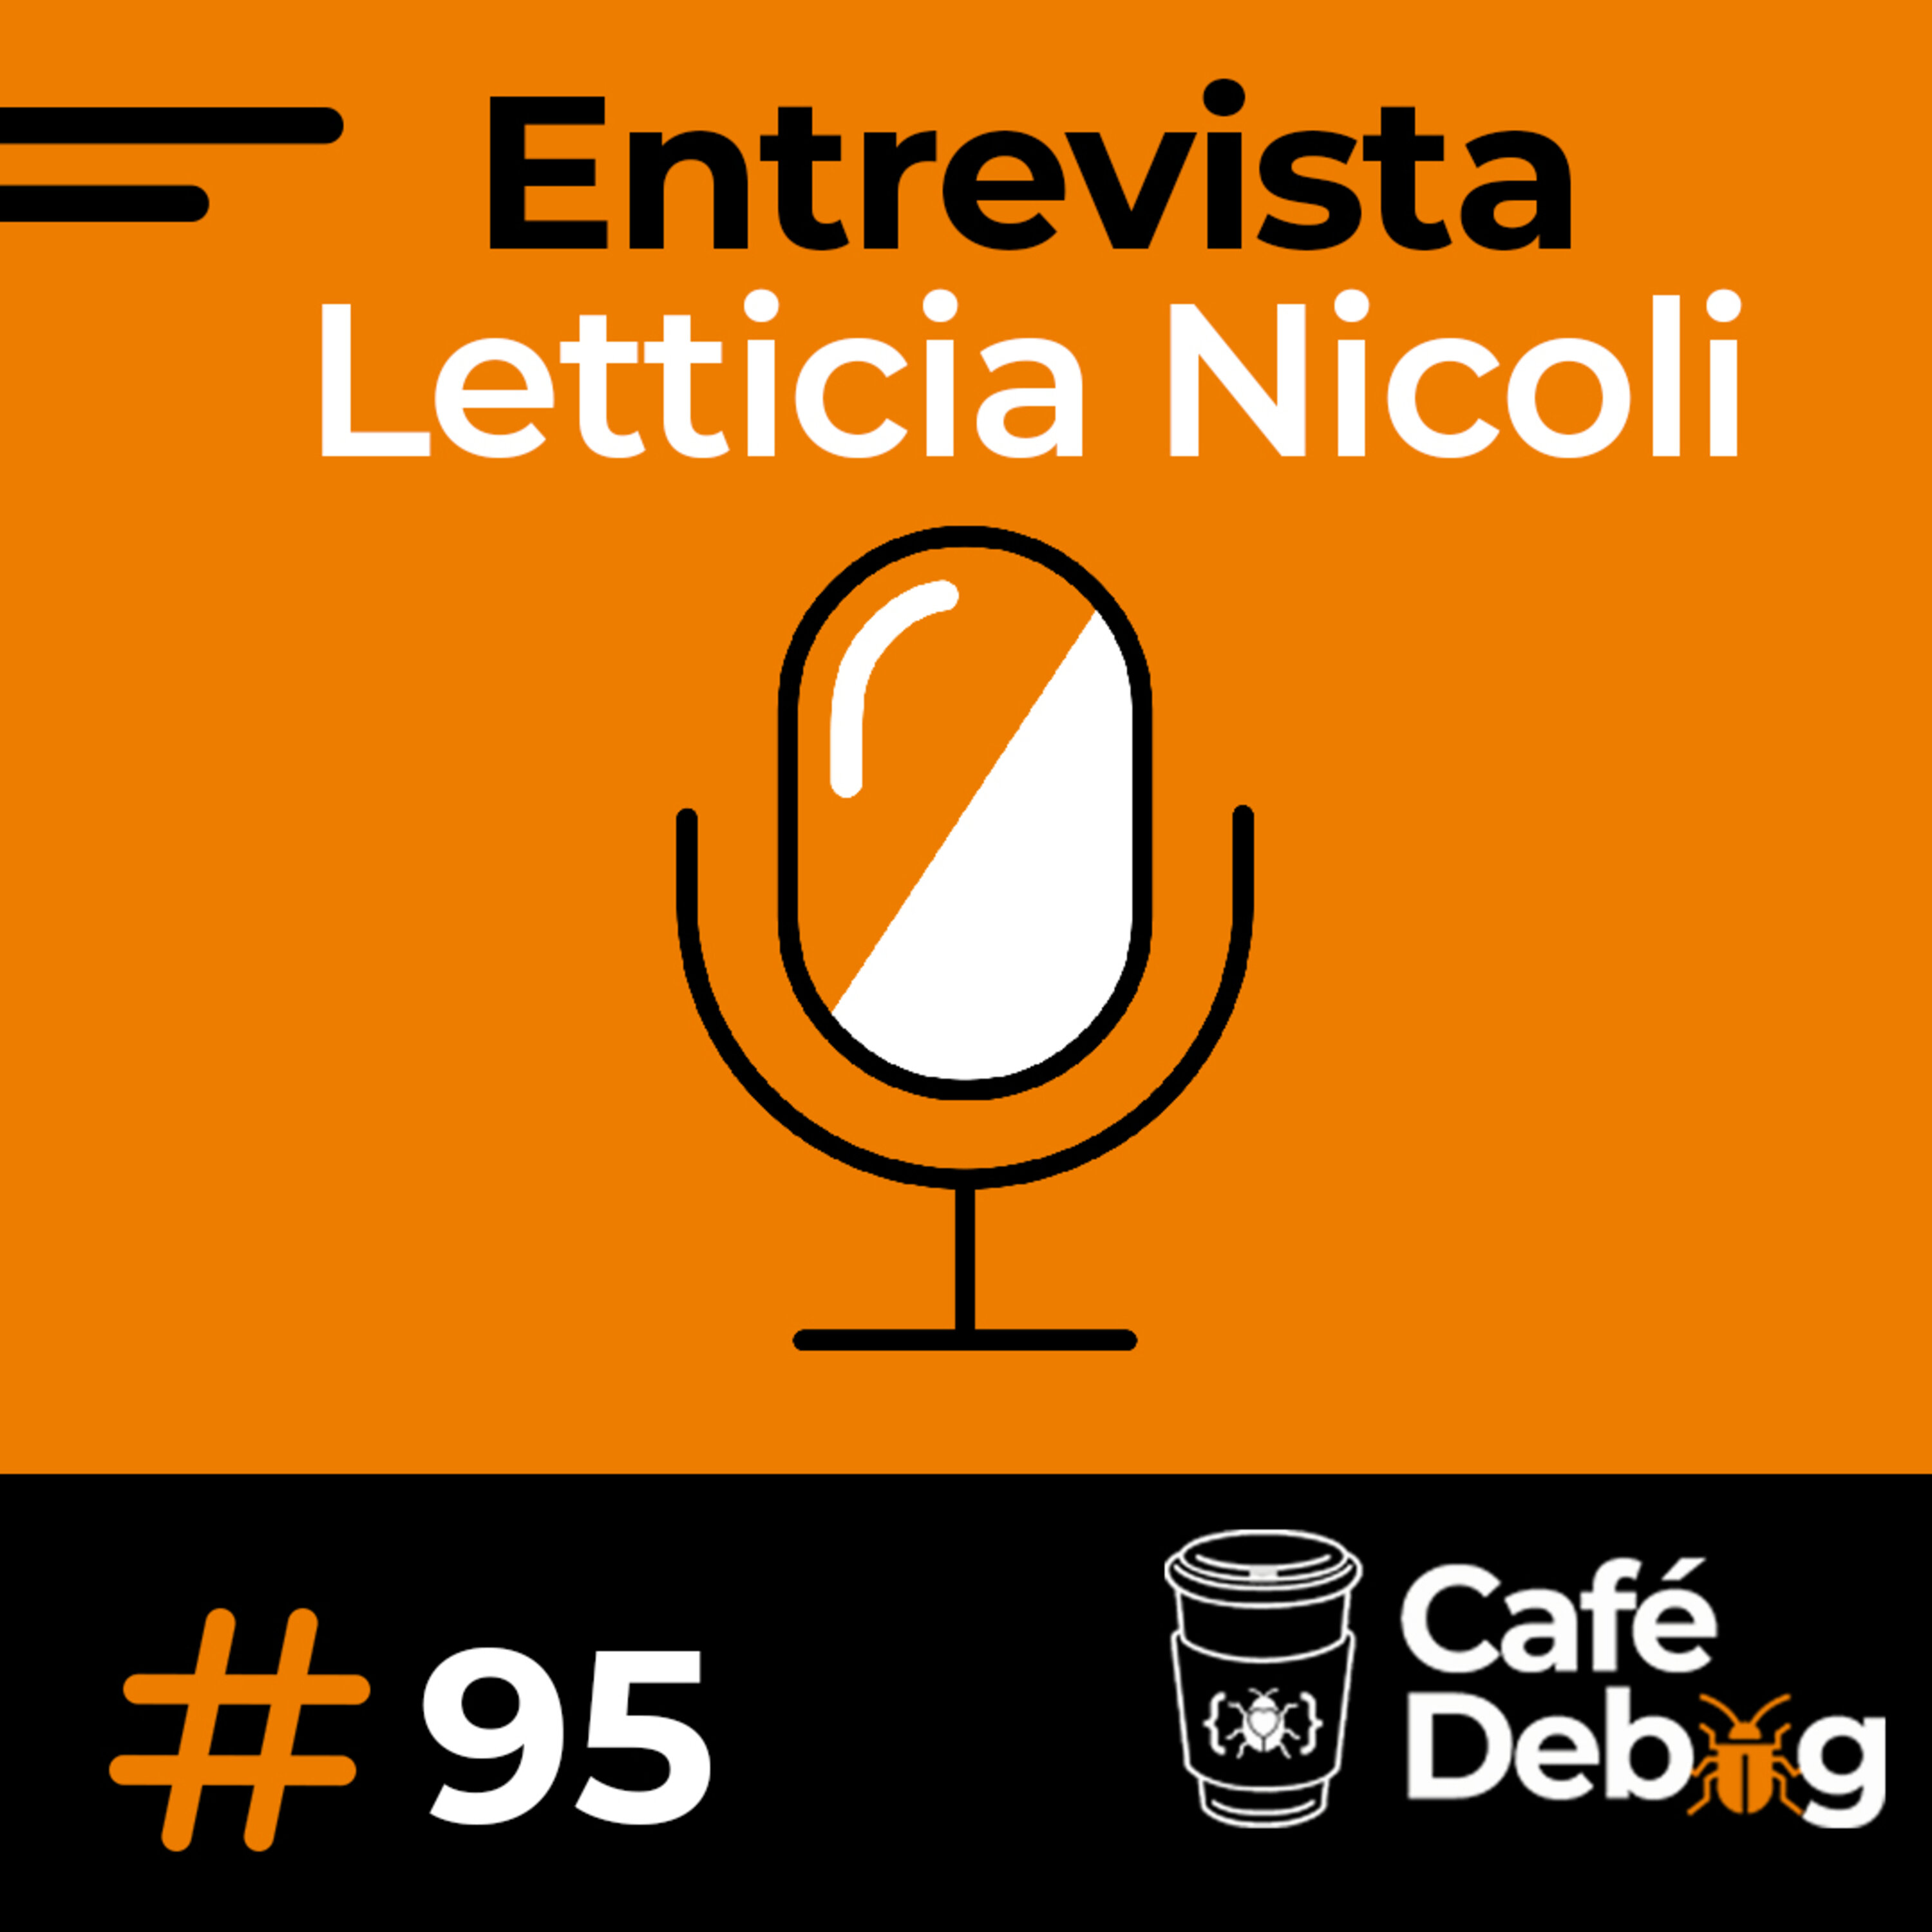 #95 Entrevista com Letticia Nicoli - CI/CD mobile, Engenharia de Software e carreiras